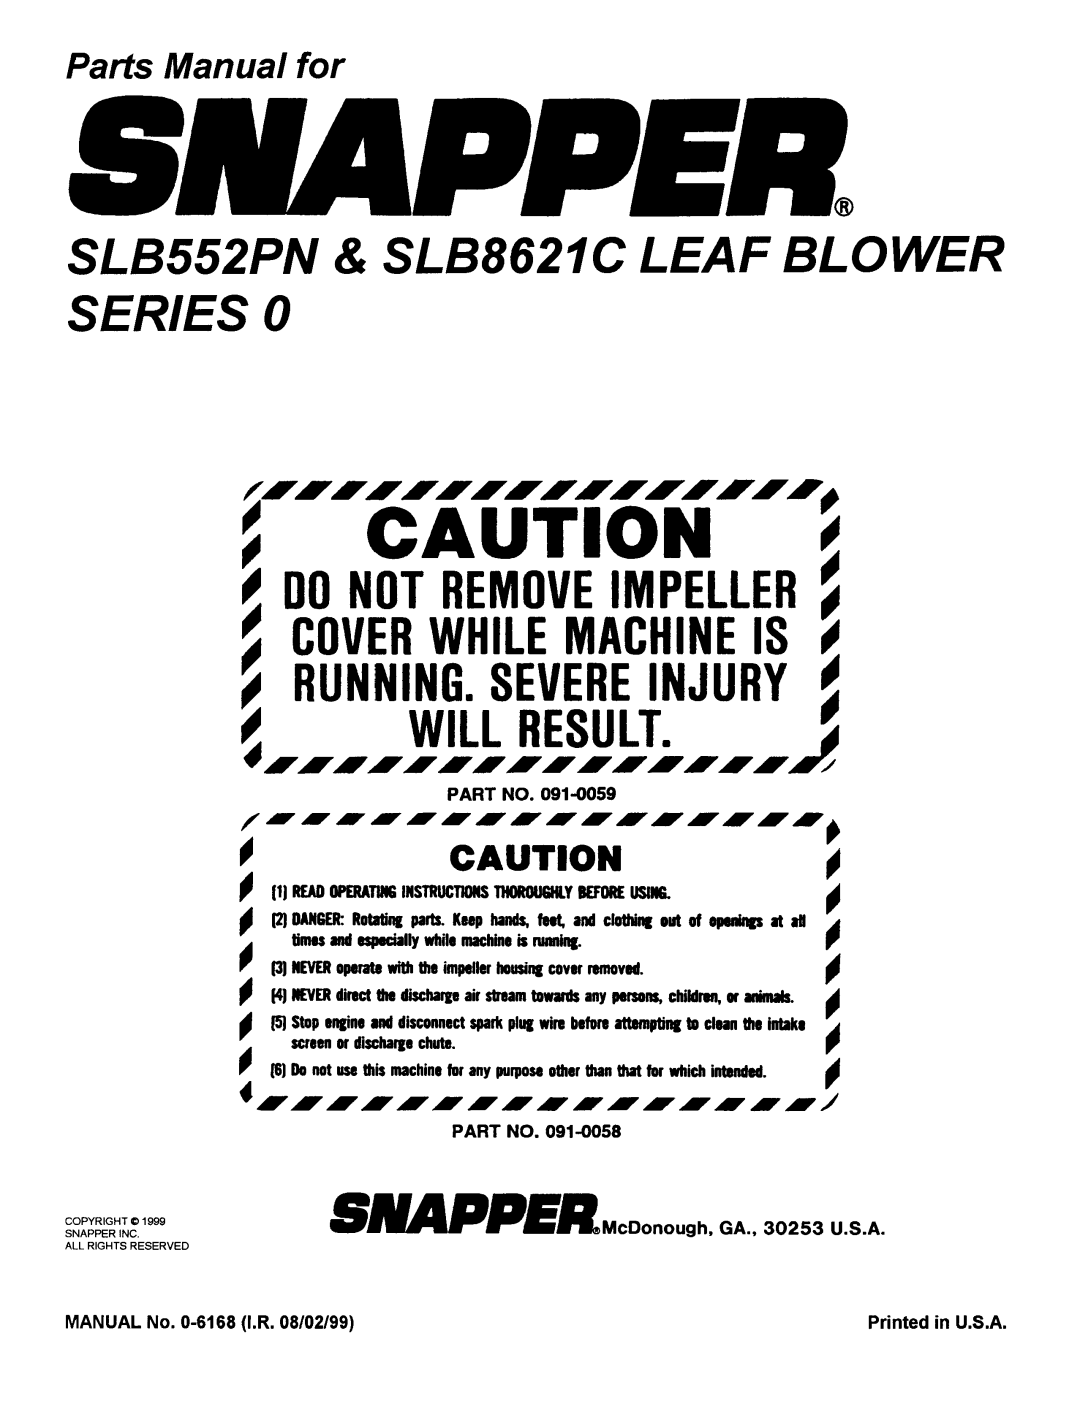 Snapper SLB552PN, SLB8621C manual 